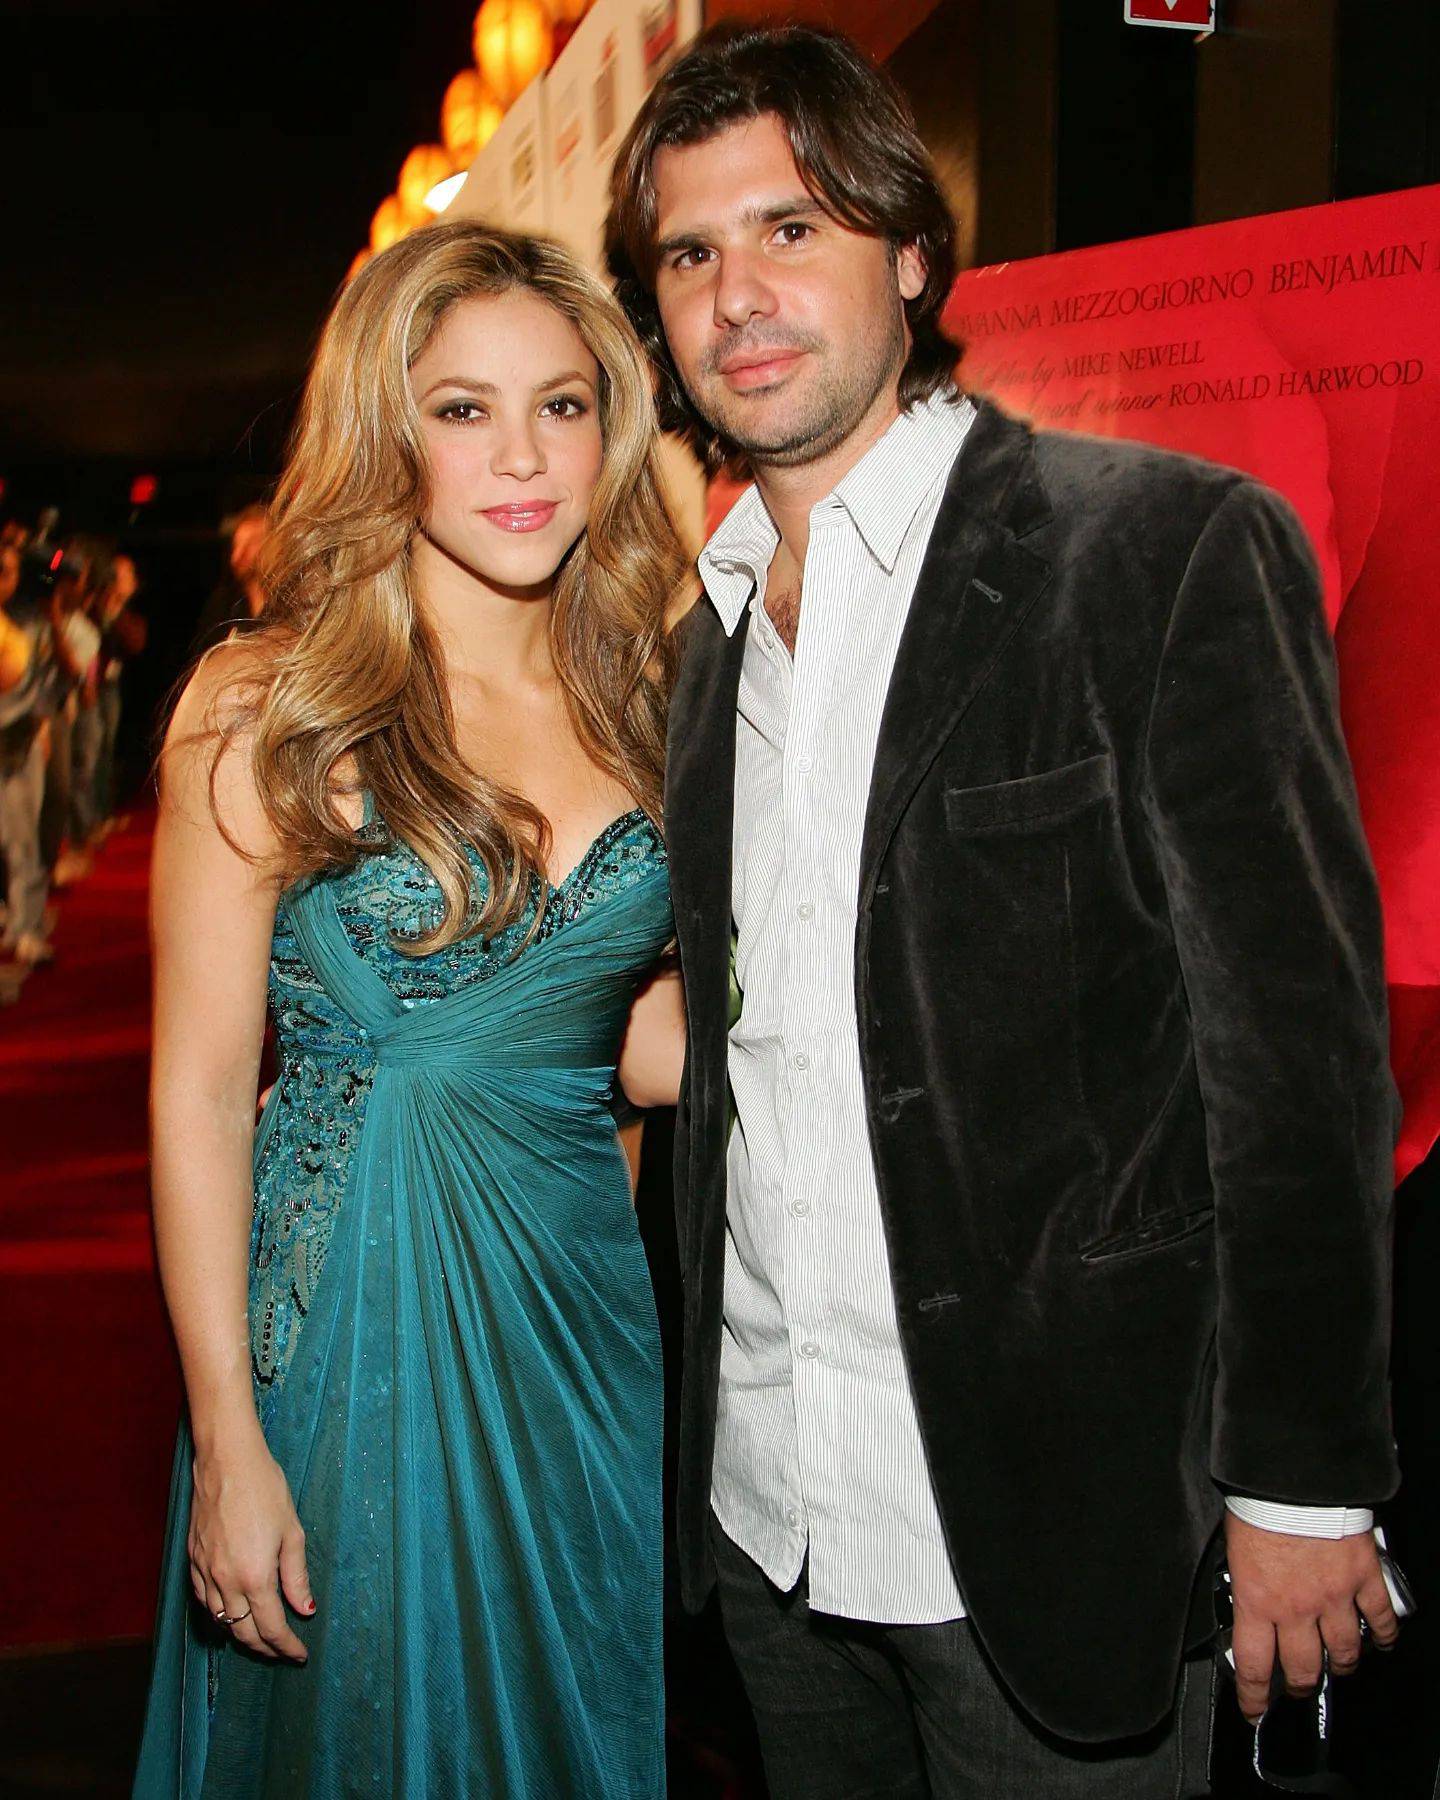 Shakira y Antonio de la Rúa de noche, toma de plano americano, ambos visten de noche. Antonio un traje negro con camisa y shakira un vestido verde de seda con tirantes y escote, tomado en un costado de la cintura.